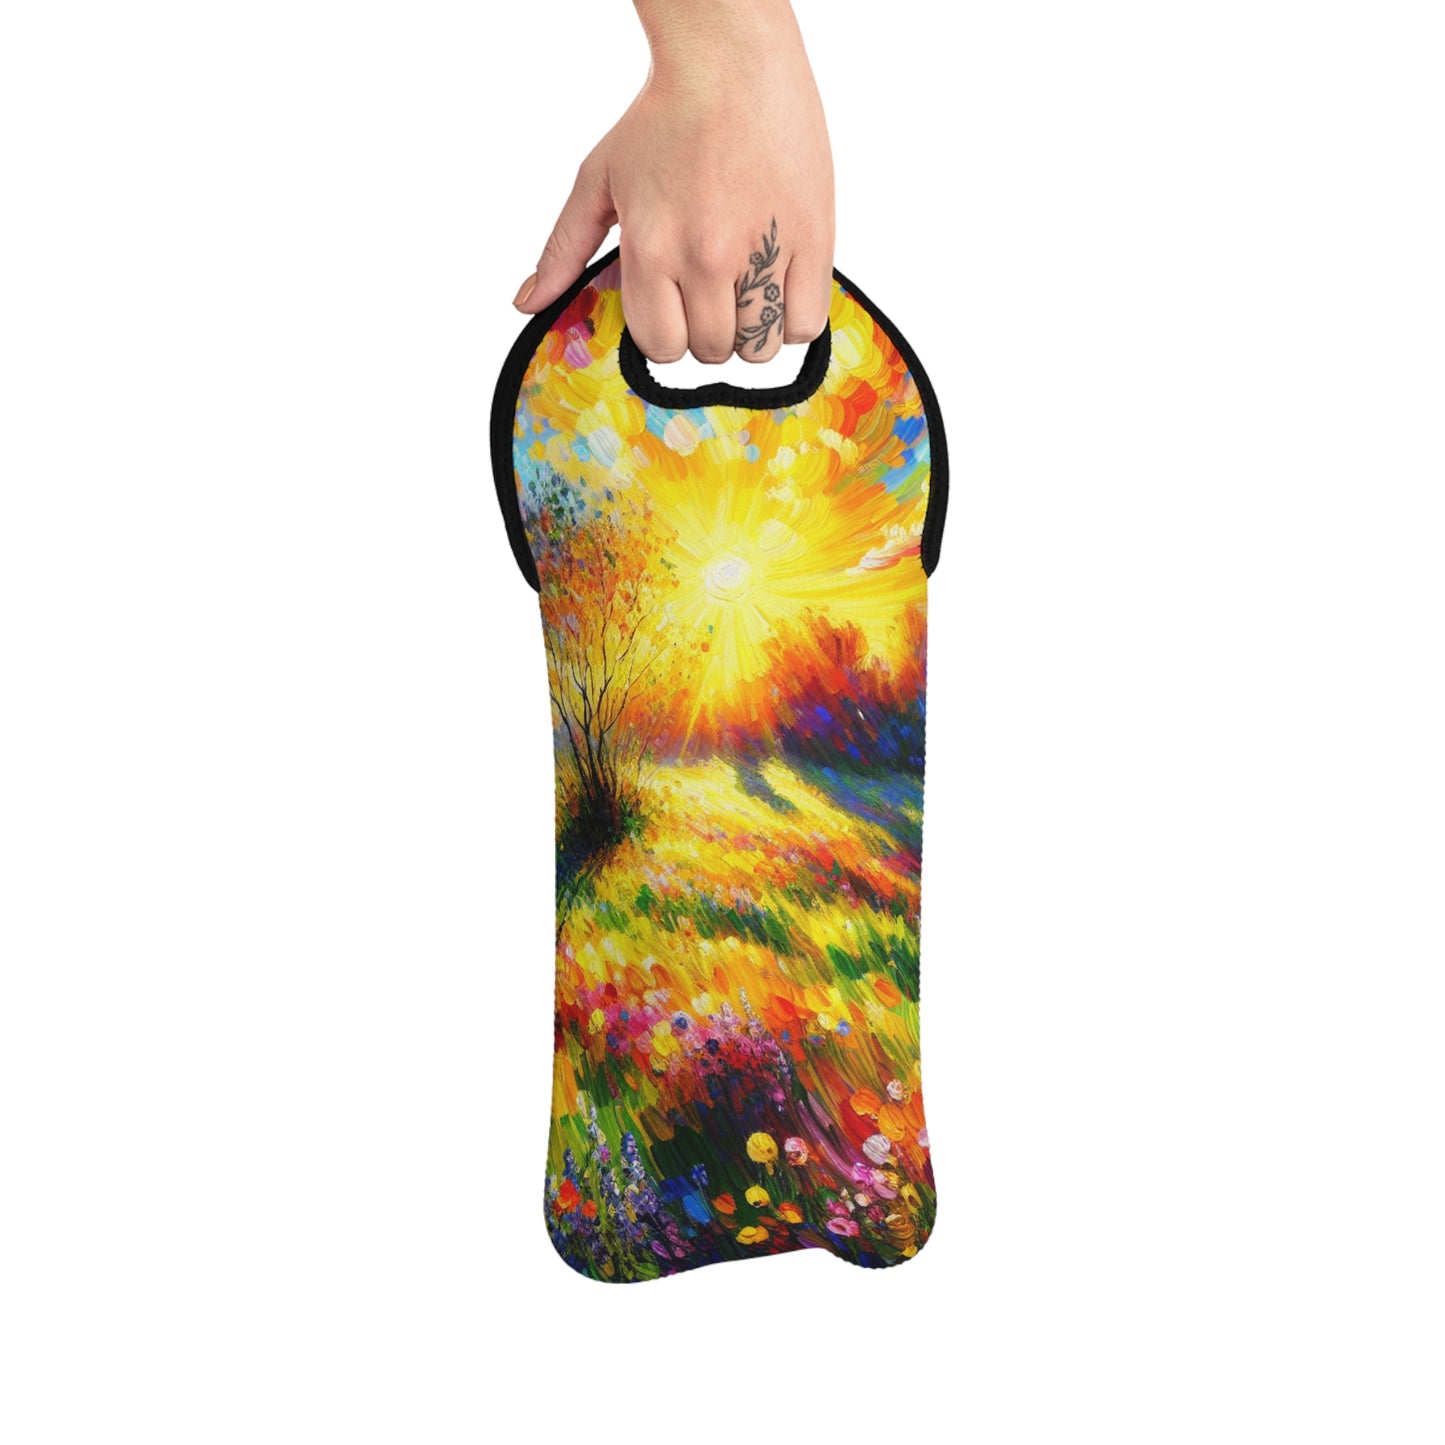 "Vibrant Springtime Sky" - La bolsa de asas de vino alienígena estilo fauvismo